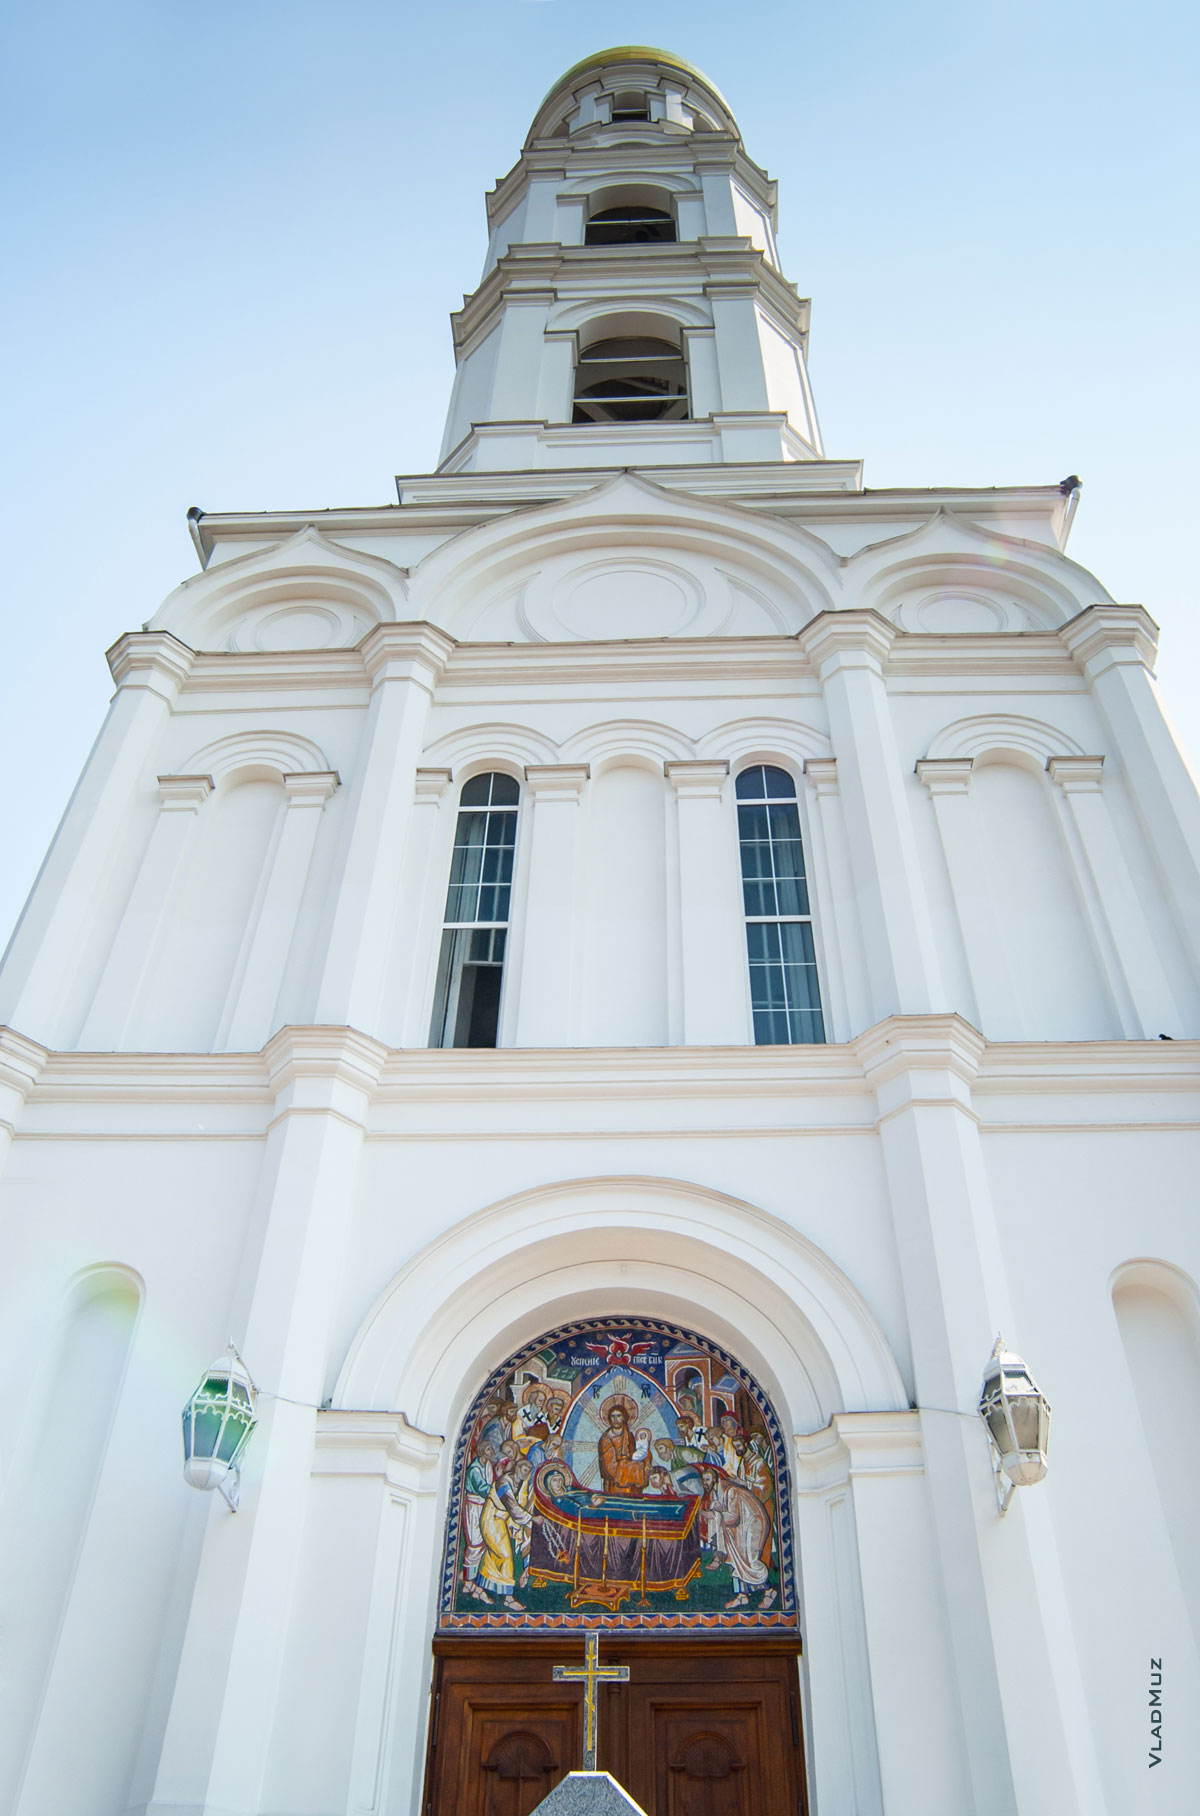 Фото г. Одессы: вход в Свято-Успенский кафедральный собор и башня колокольни